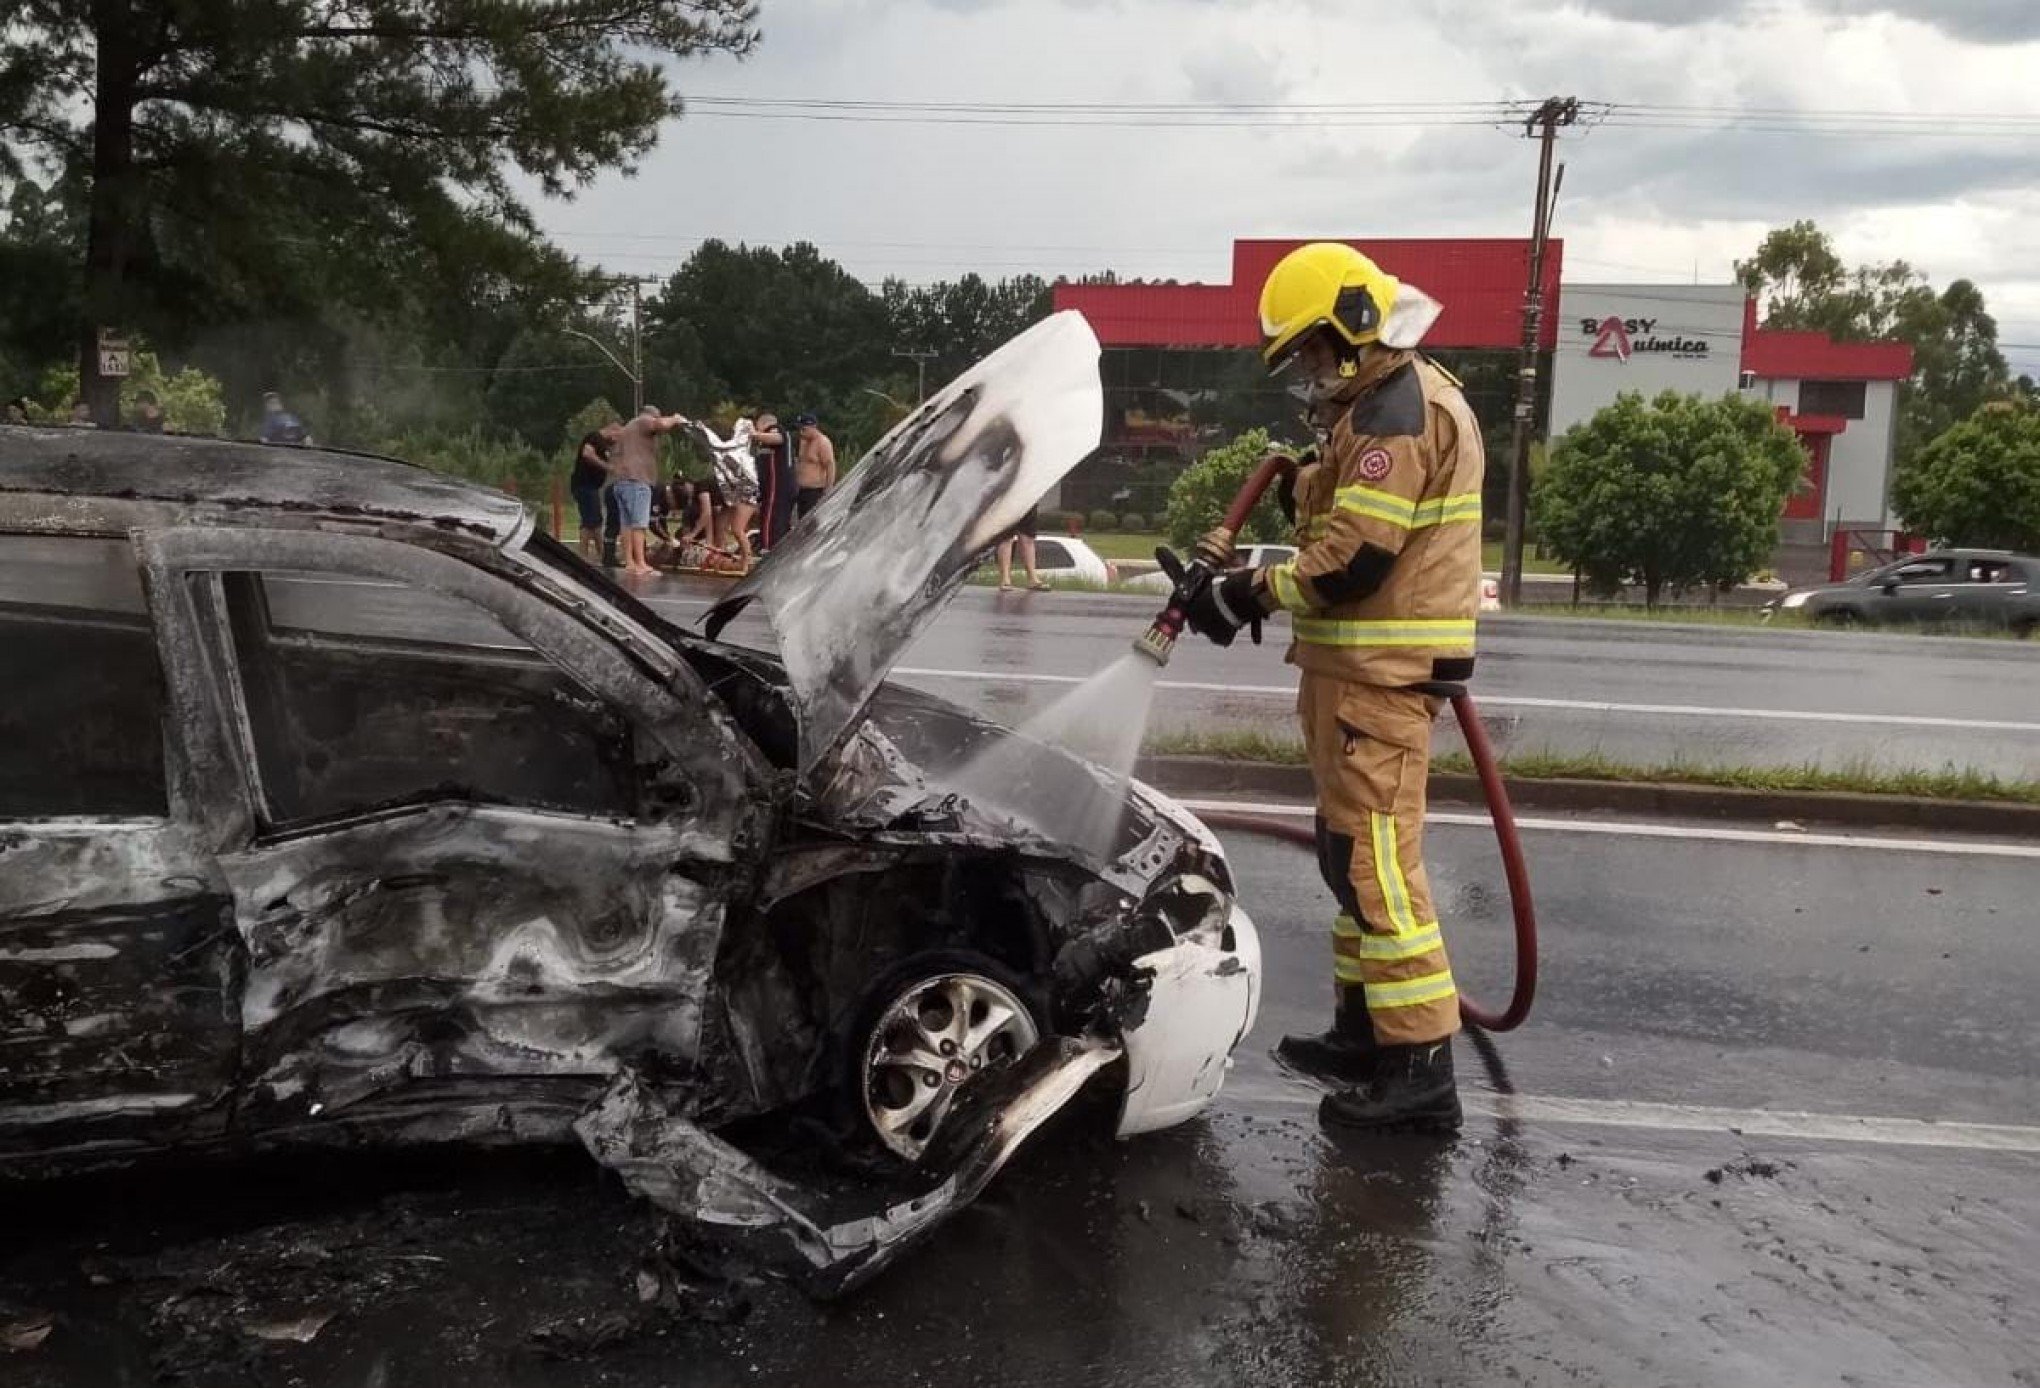 ACIDENTE DE TRÂNSITO: Colisão incendeia veículos em acidente com oito vítimas na RS-239 em Sapiranga